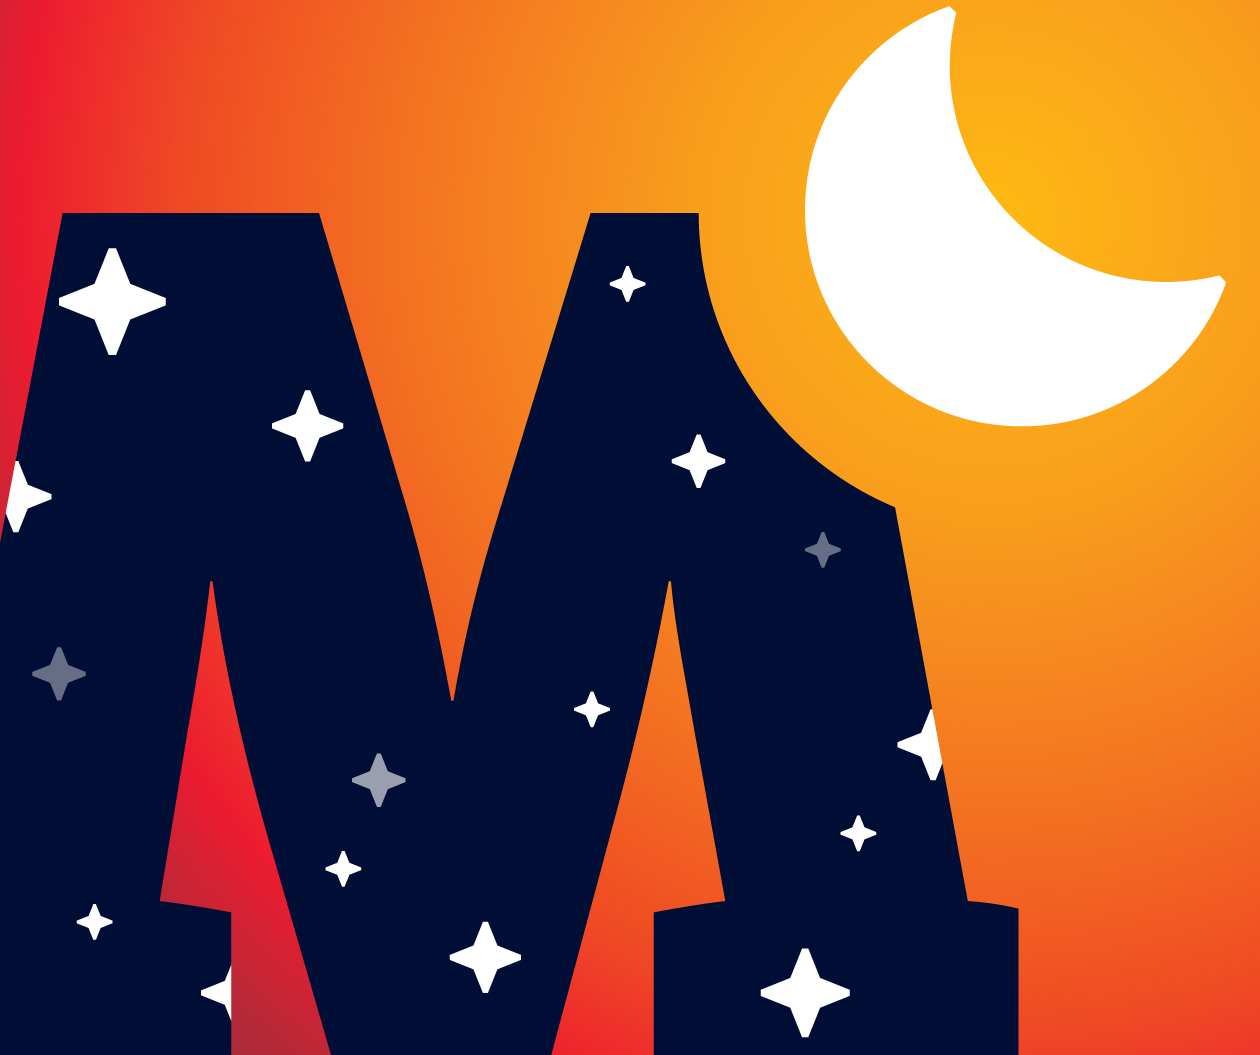 Ein dunkelblaues großes M, auf dem kleine Sterne funkeln, steht vor einem orangefarbenen Farbverlauf mit weißer Mondsichel.